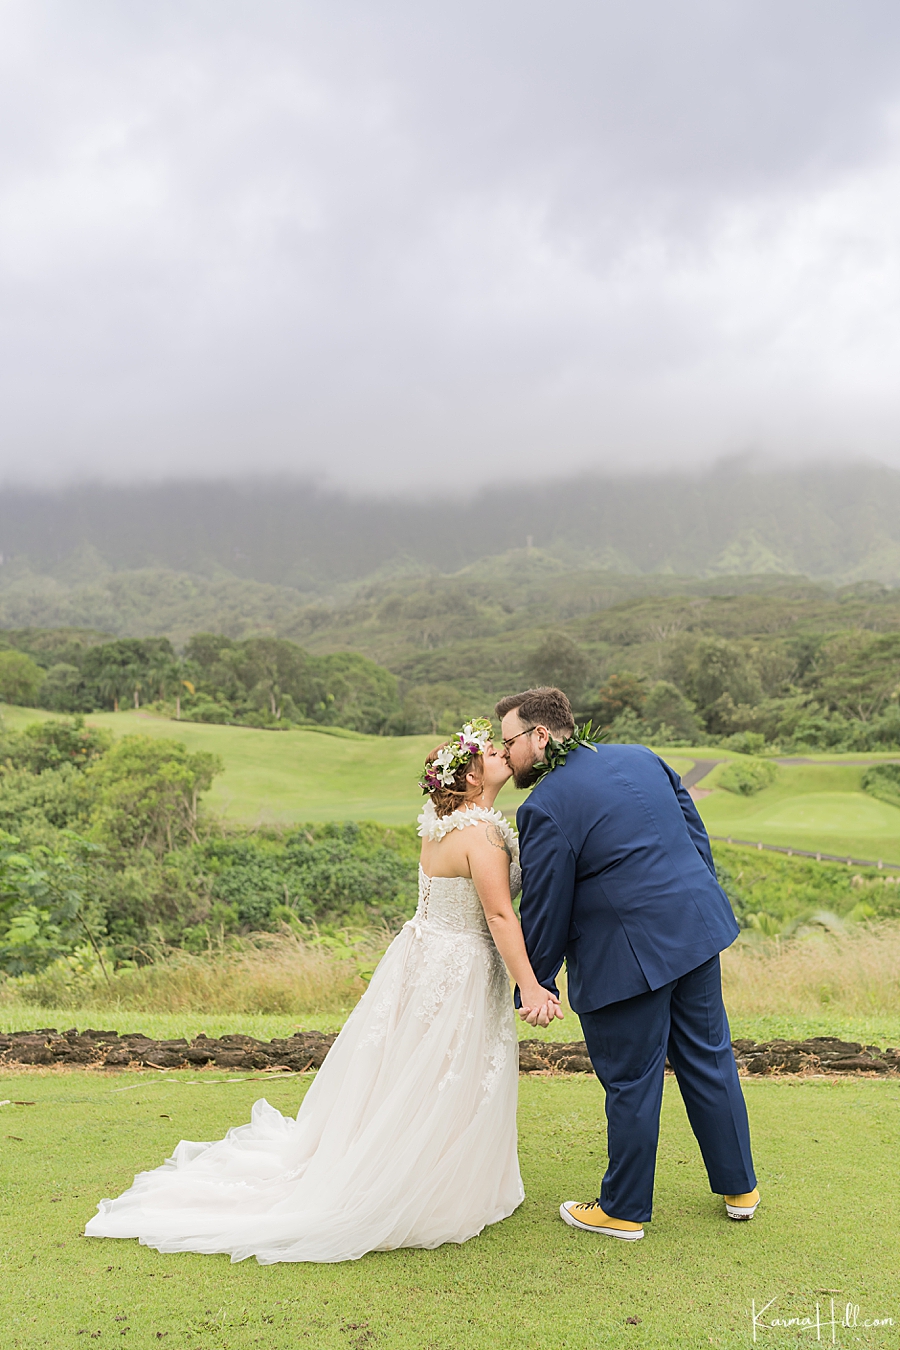 Oahu wedding photographers
